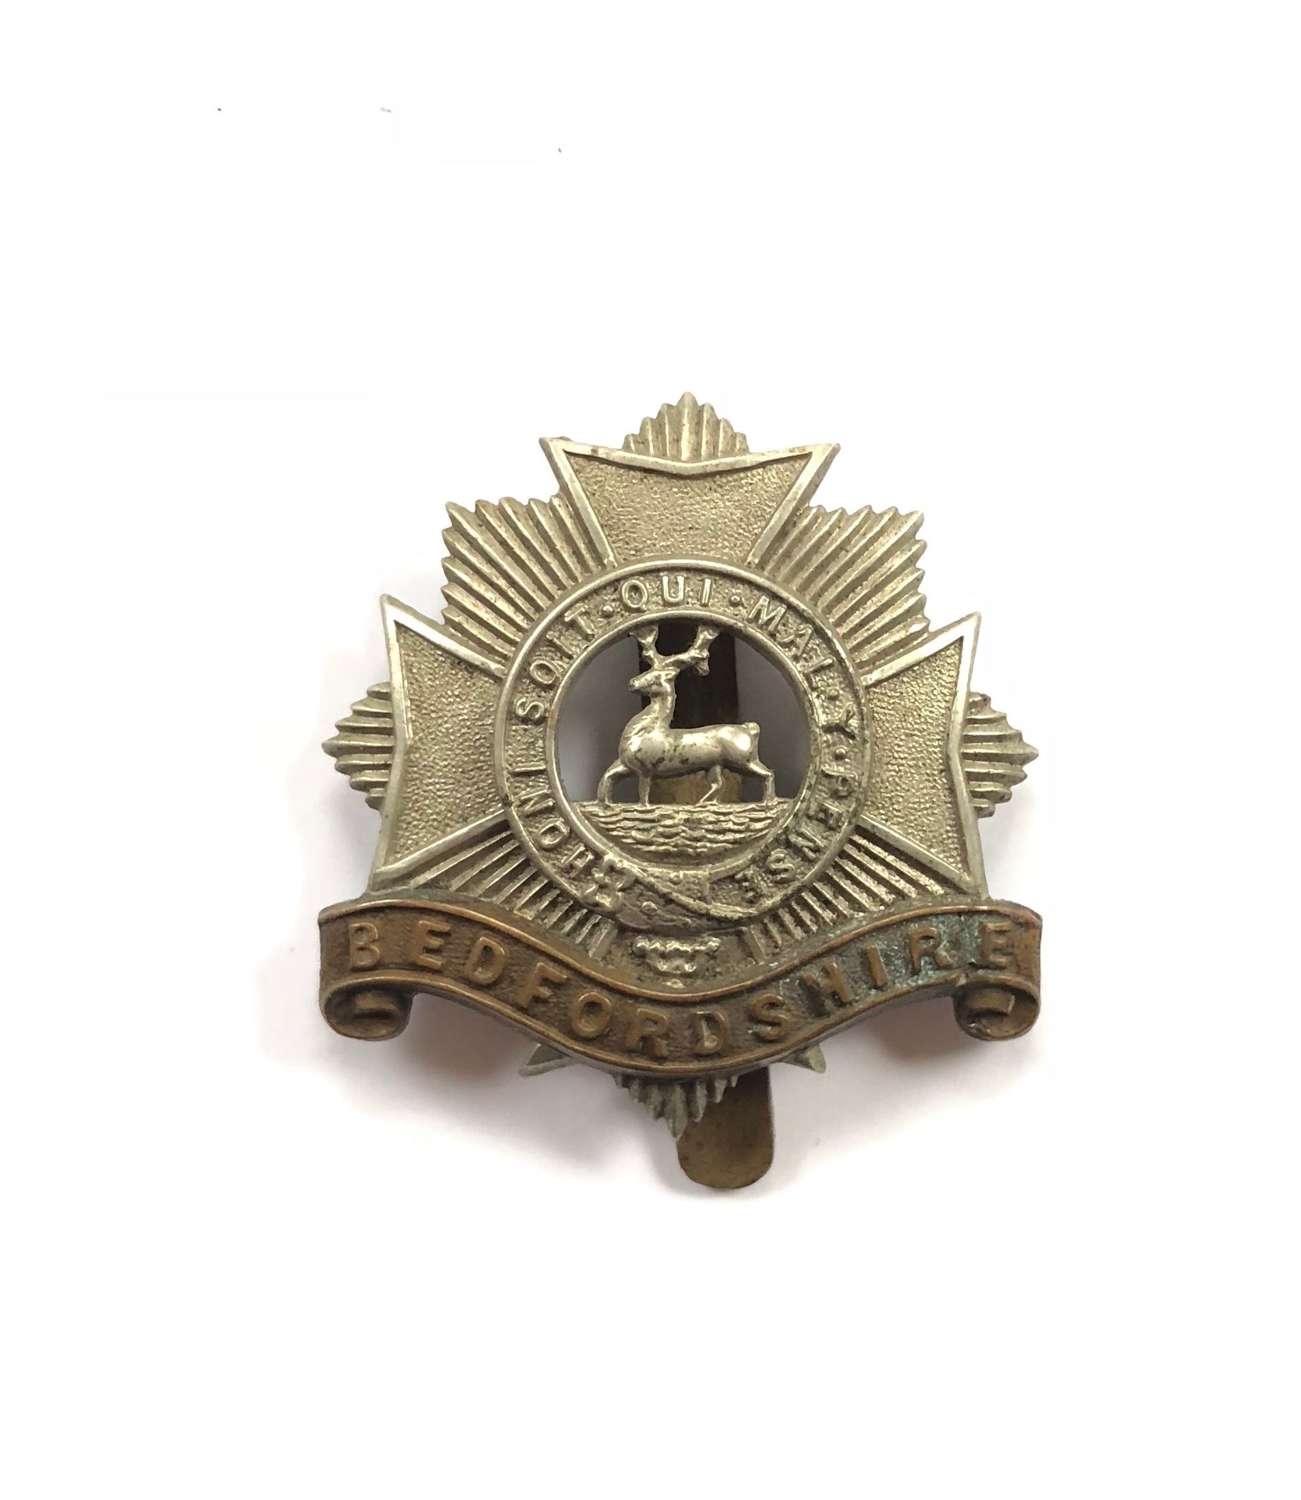 WW1 Period Bedfordshire Regiment Cap Badge.